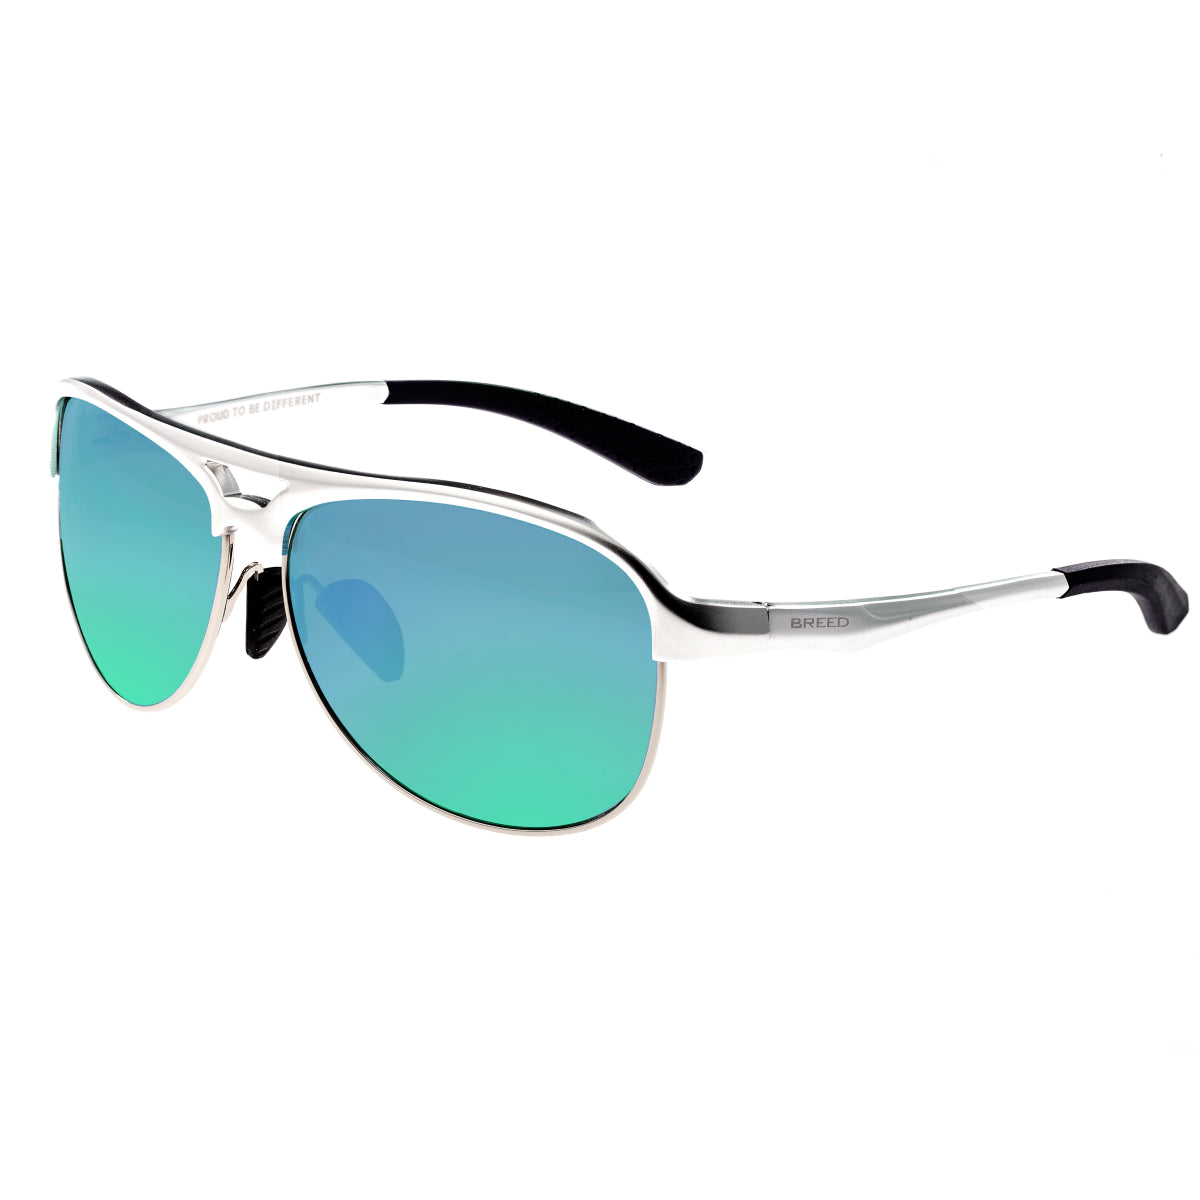 Breed Jupiter Aluminium Polarized Sunglasses - Silver/Blue-Green - BSG019SR